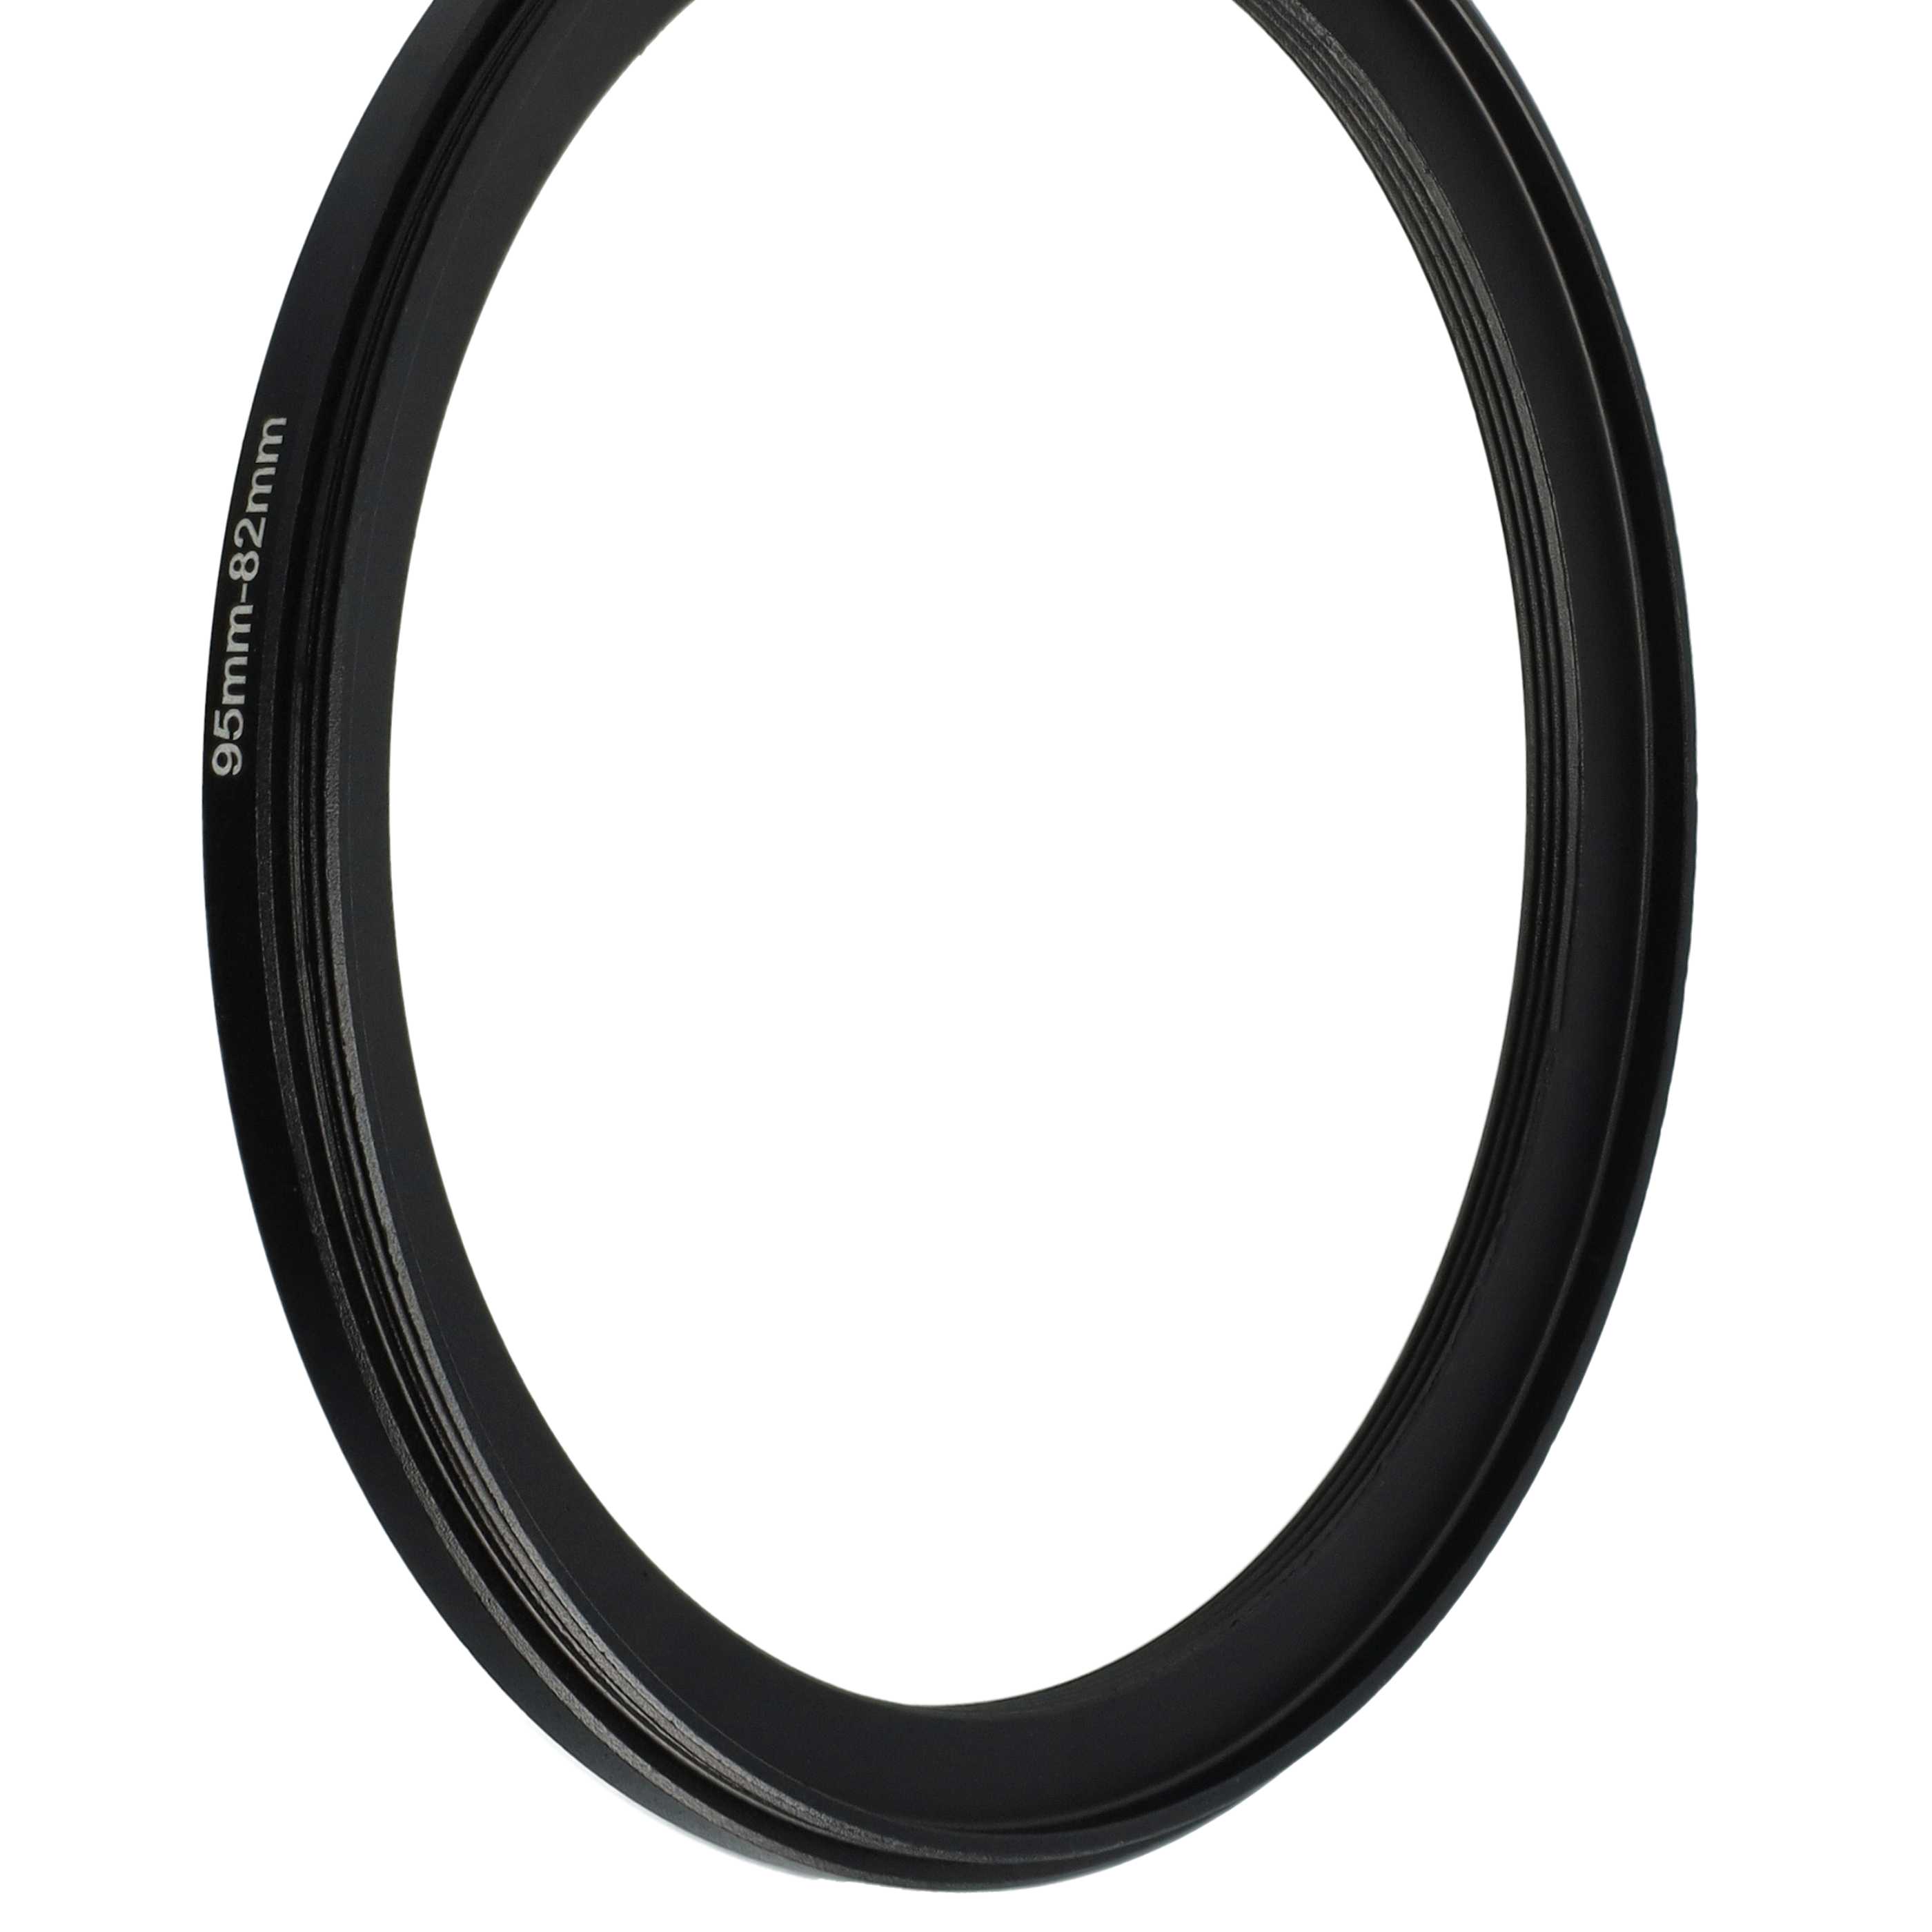 Anillo adaptador Step Down de 95 mm a 82 mm para objetivo de la cámara - Adaptador de filtro, metal, negro